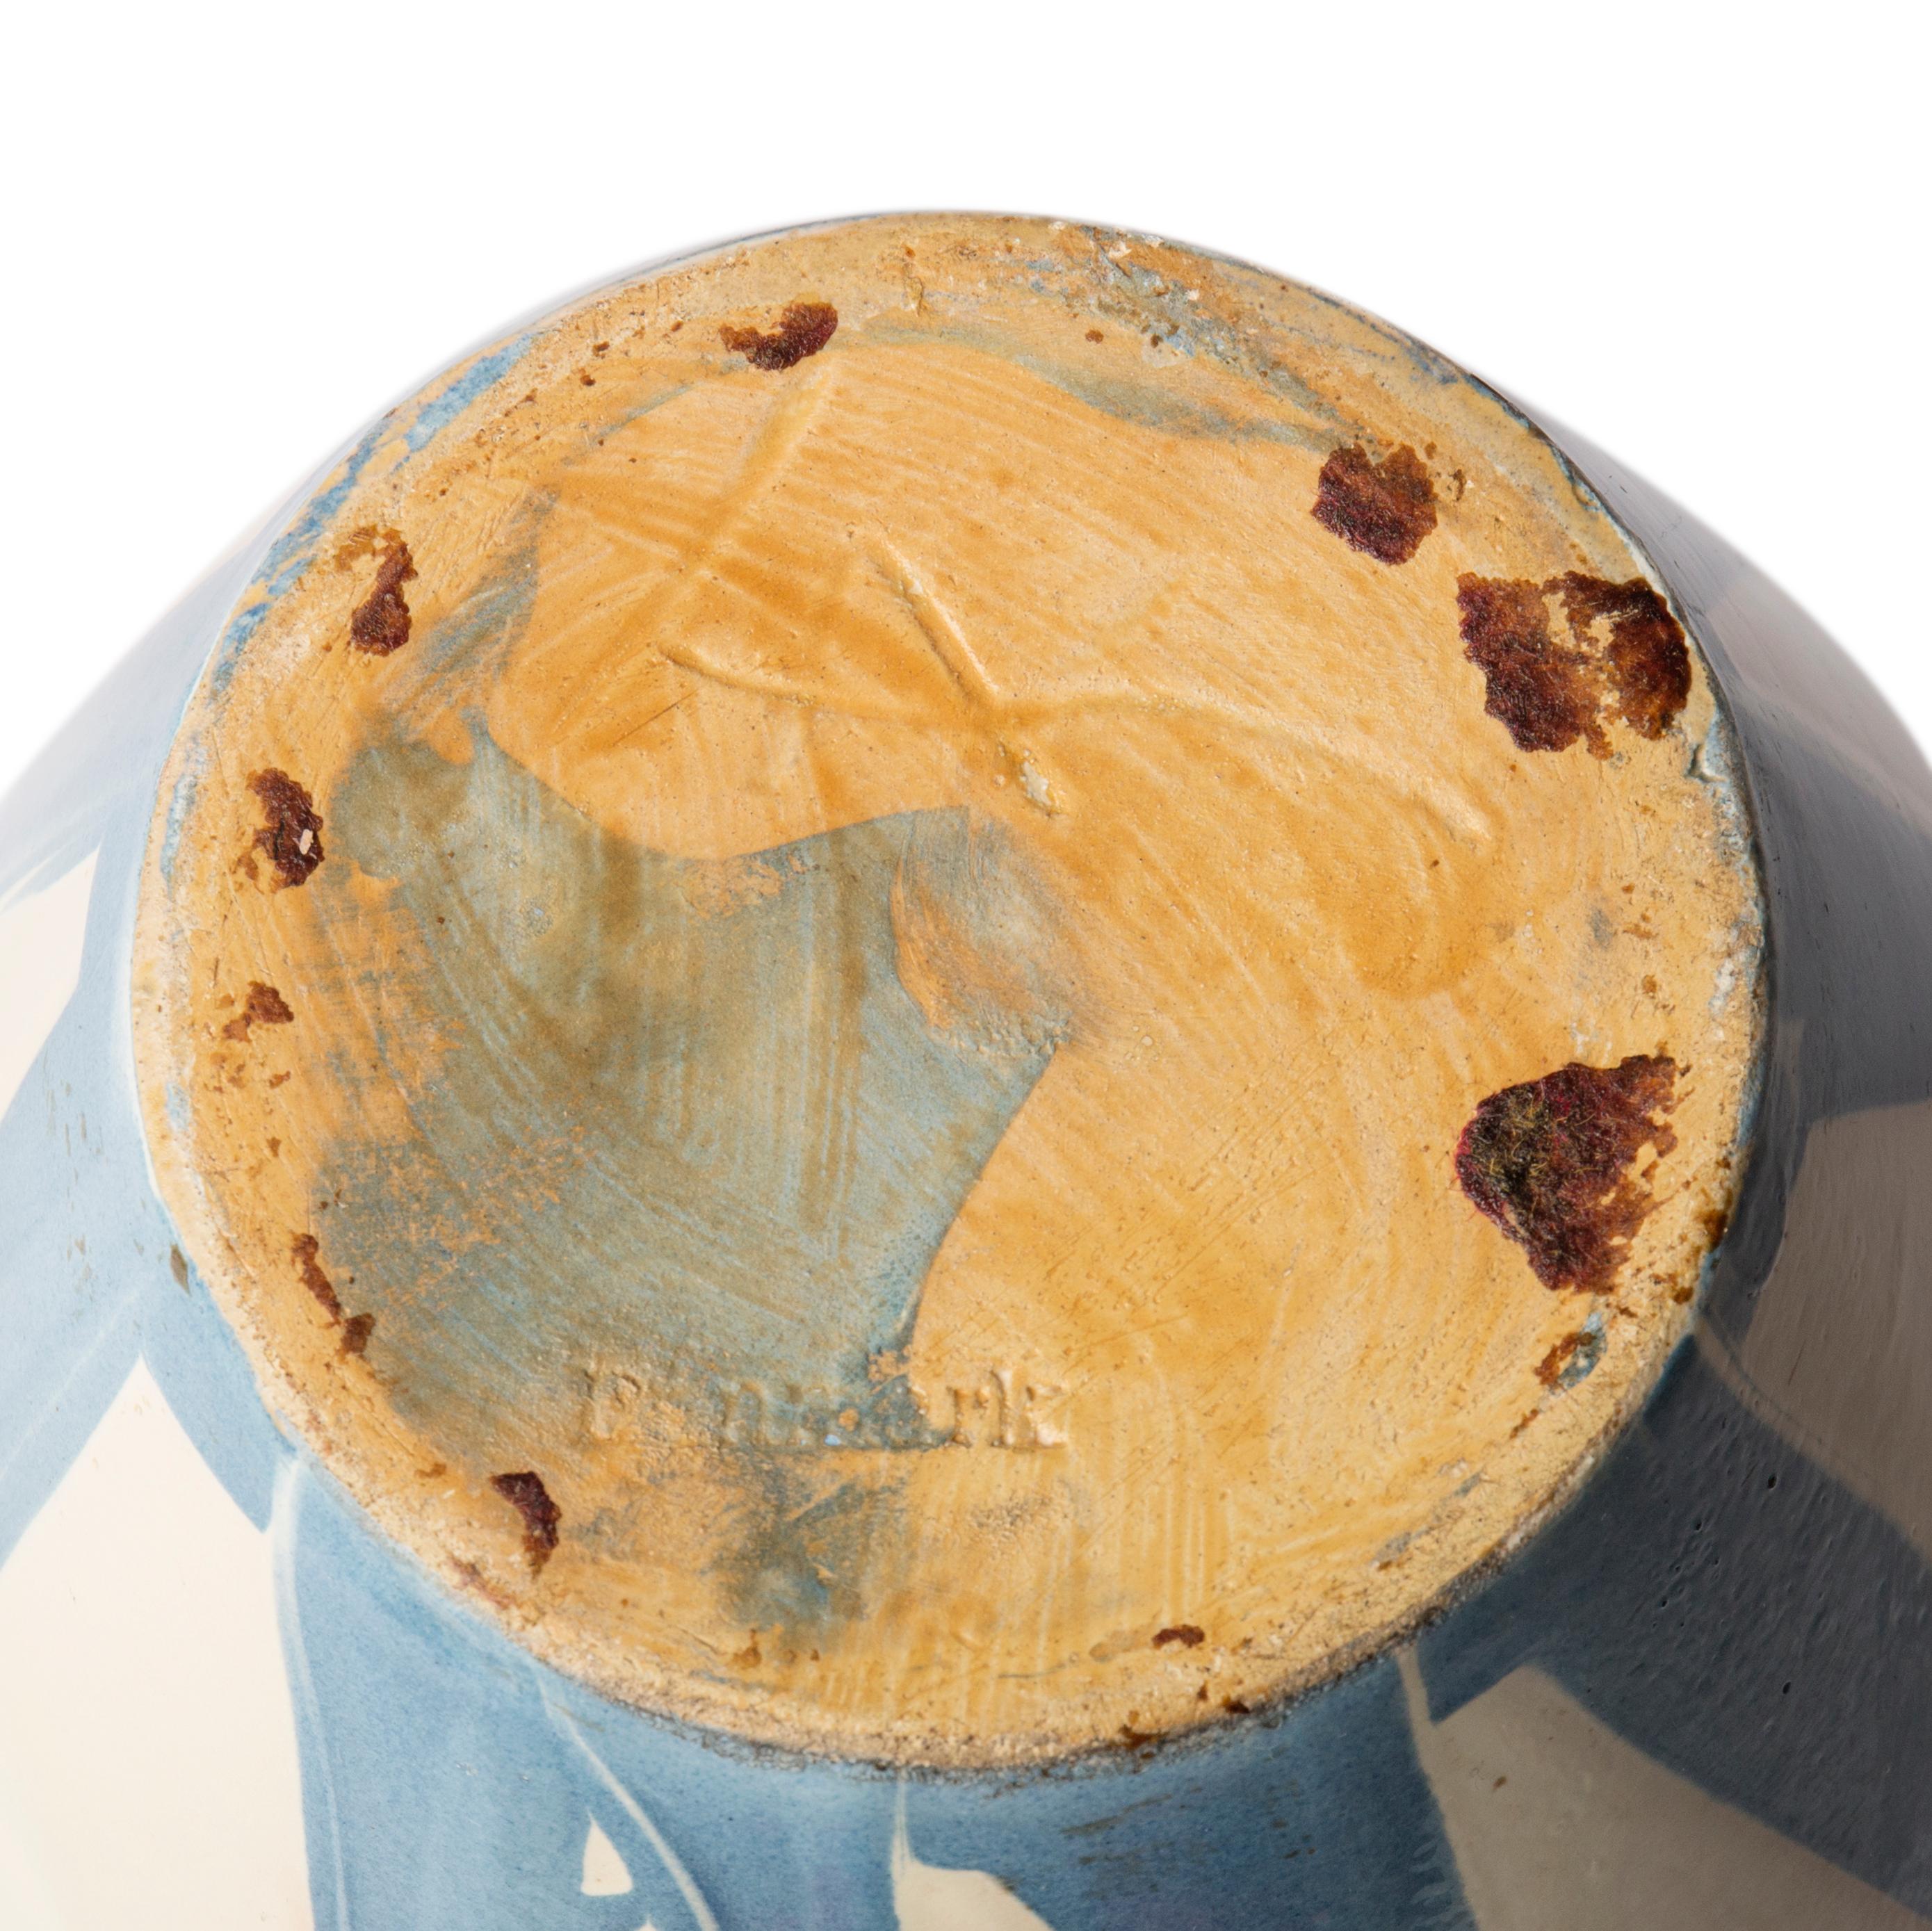 Este gran jarrón de cerámica de color crema con rayas azul claro fue realizado por Herman A. Kähler, Dinamarca, hacia la década de 1940.

El jarrón tiene el monograma 